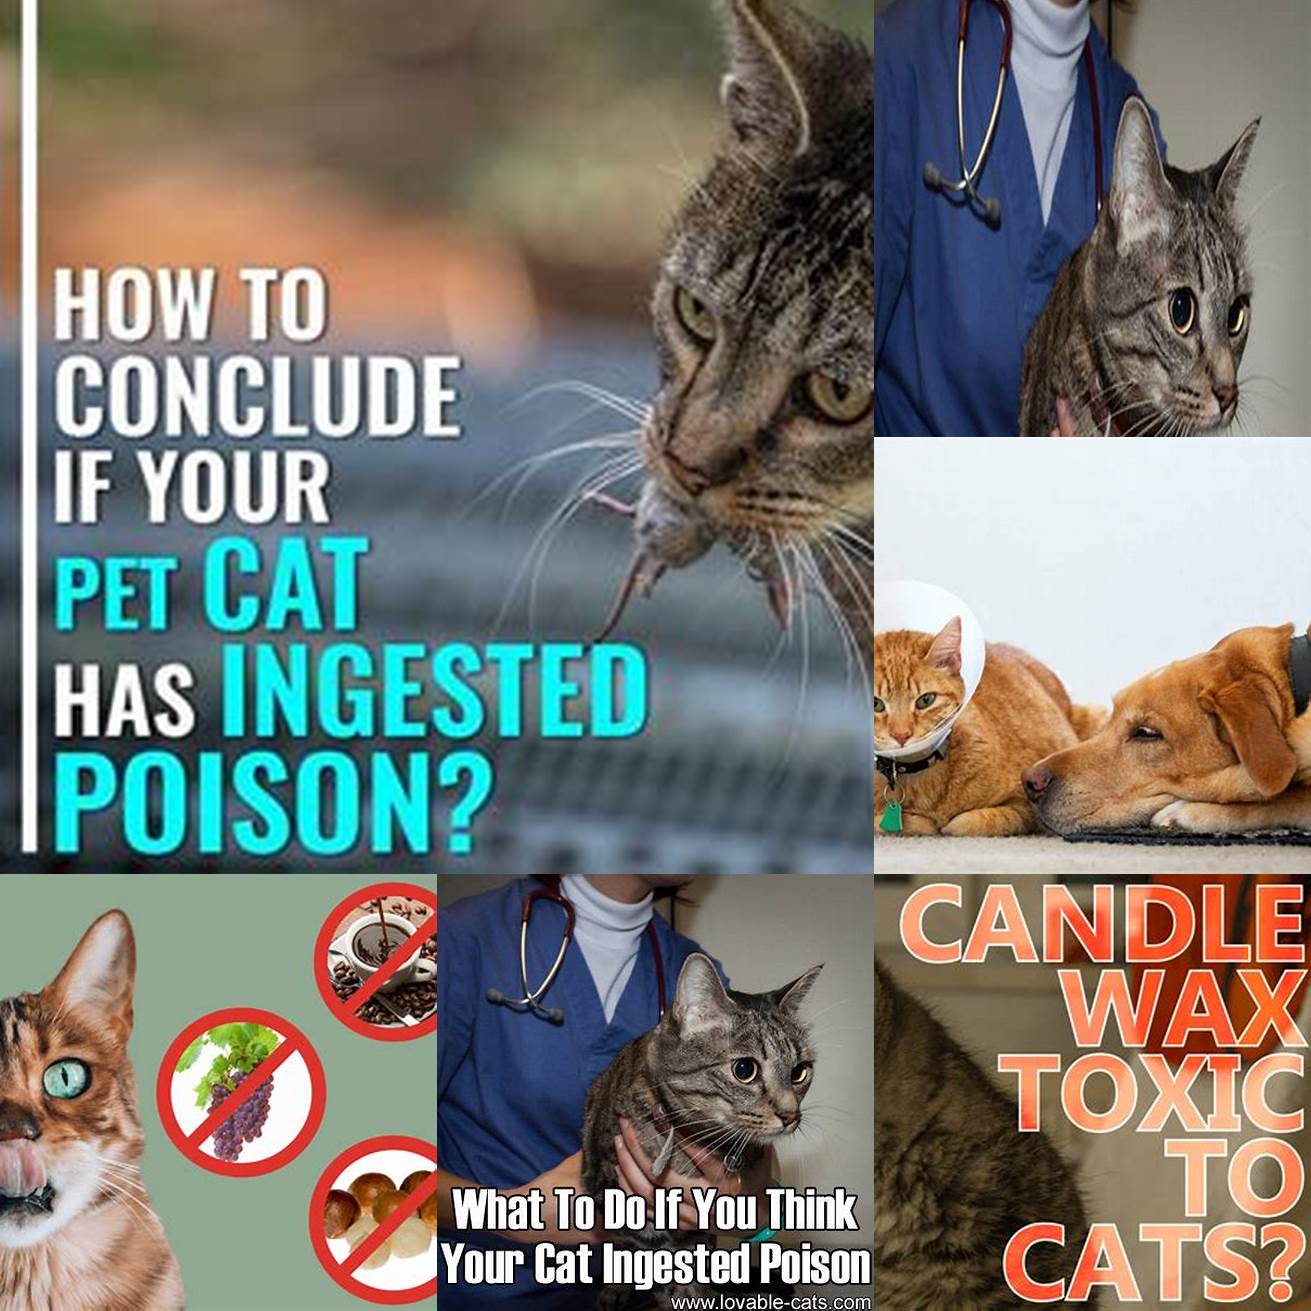 Cat who has ingested something toxic